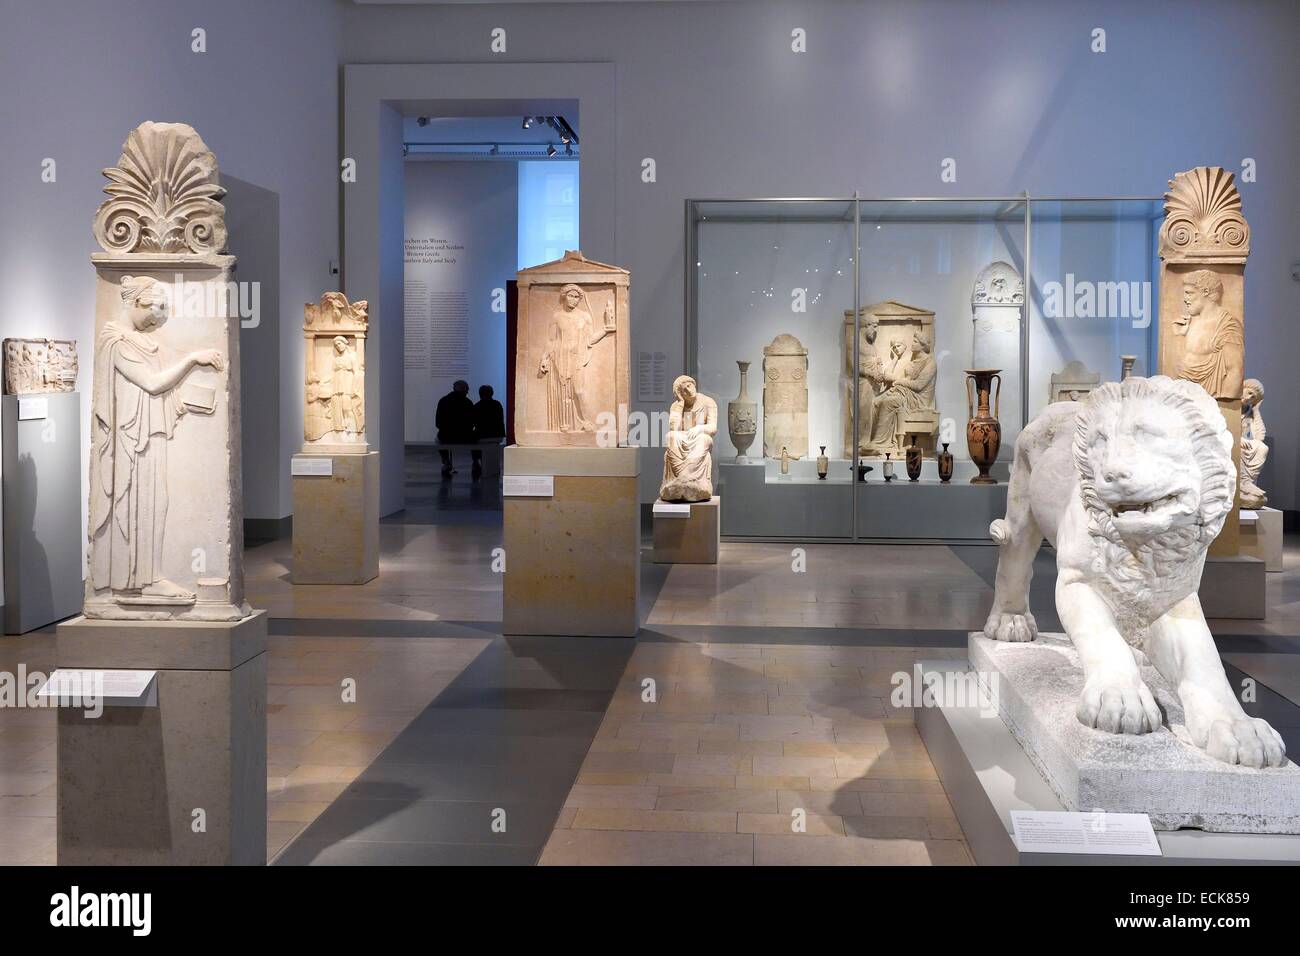 Deutschland, Berlin, Museumsinsel, aufgeführt als Weltkulturerbe der UNESCO, Altes Museum beherbergt eine Sammlung von antiken Werken Stockfoto